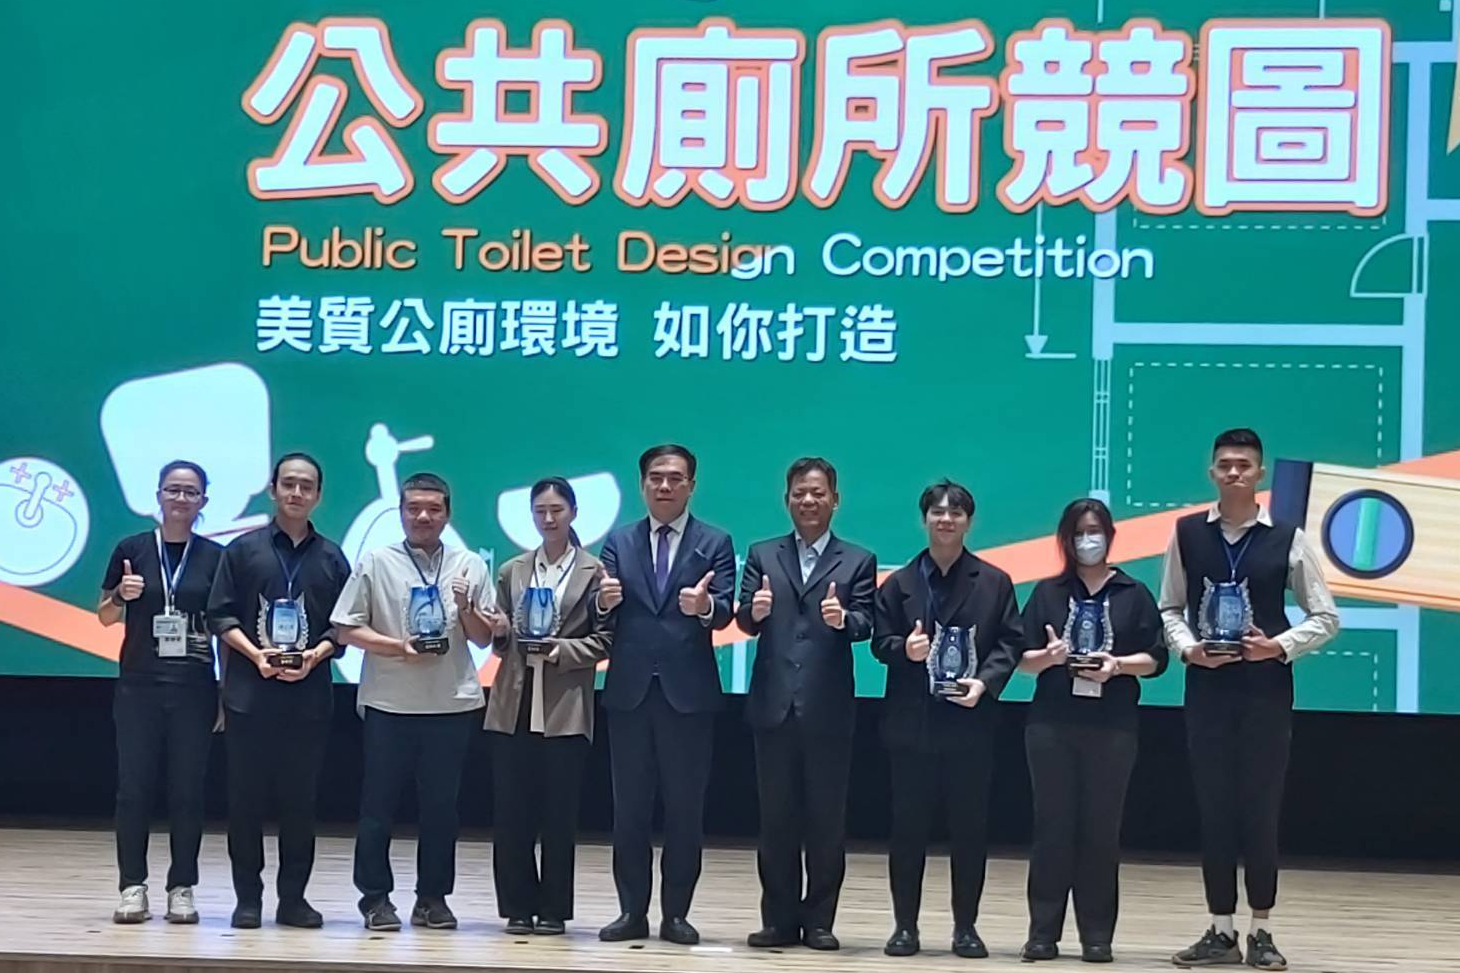 公廁競圖優等隊伍獲獎，由環境部部長彭啟明(中)頒獎。